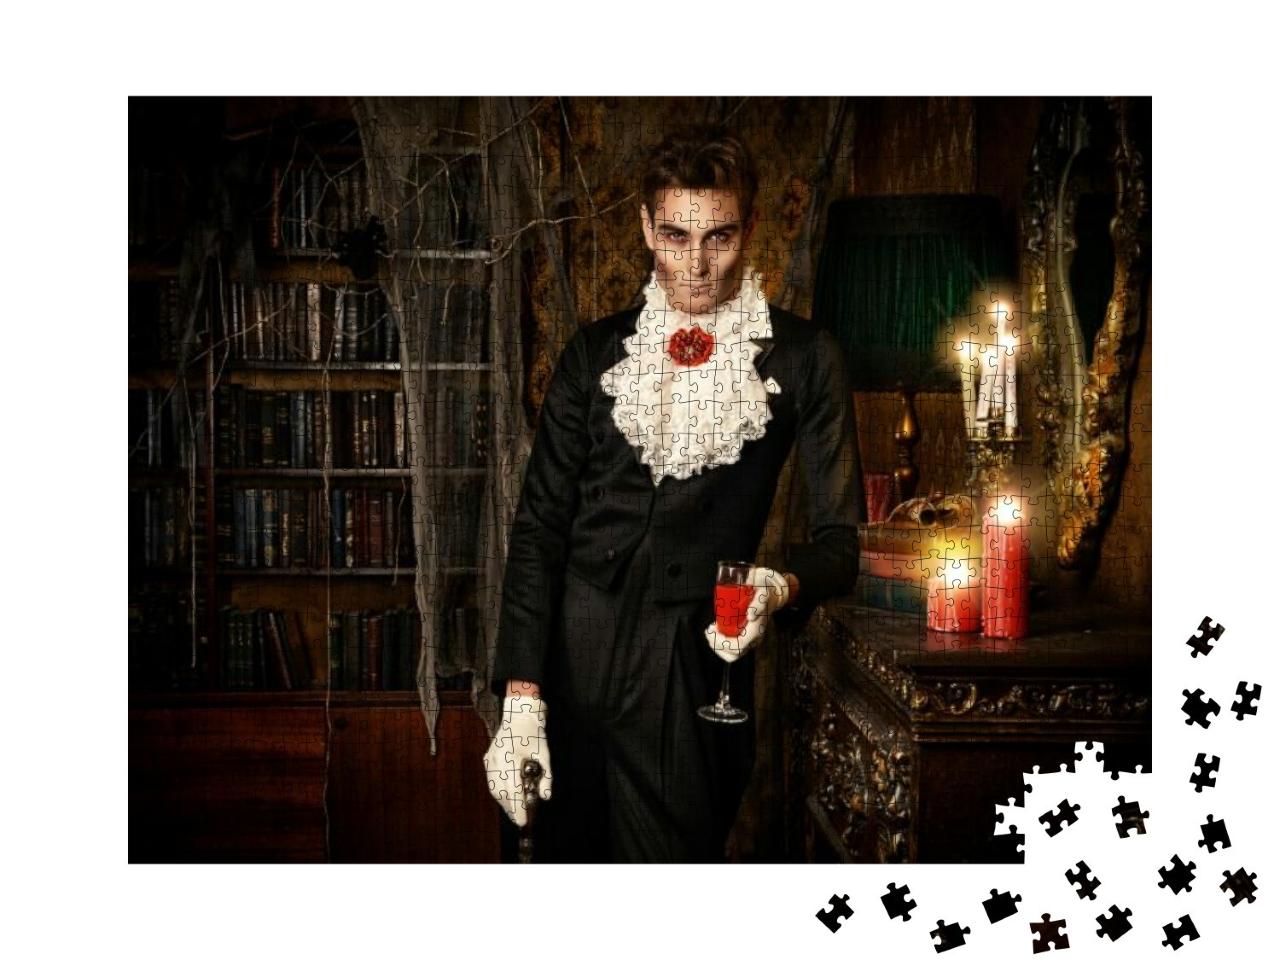 Puzzle 1000 Teile „Ein Vampir im eleganten Frack“